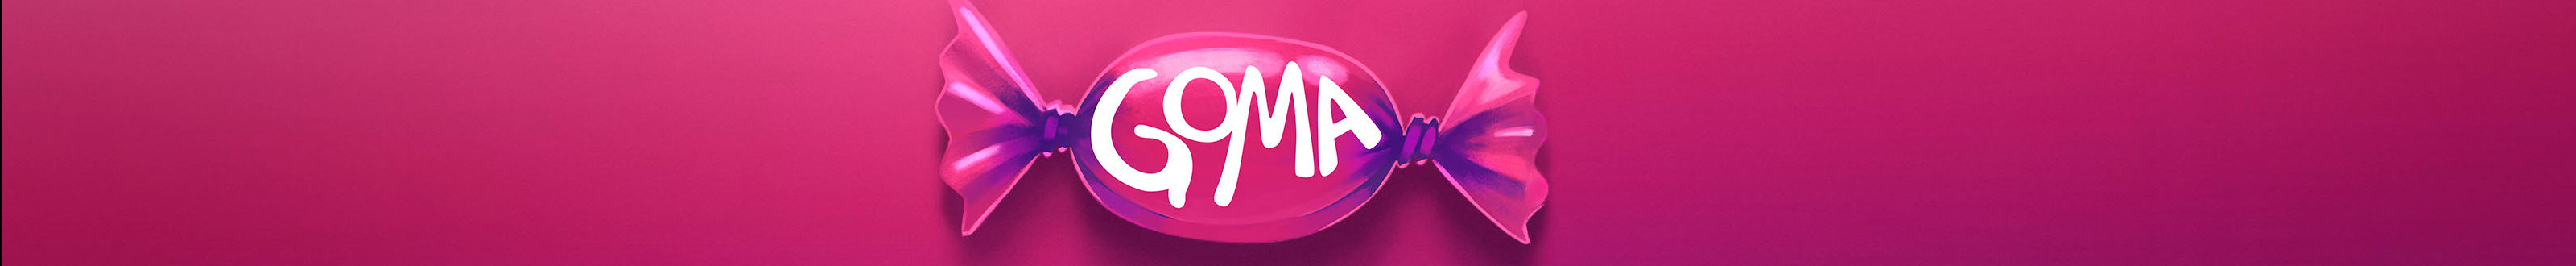 Goma Coletivo's profile banner